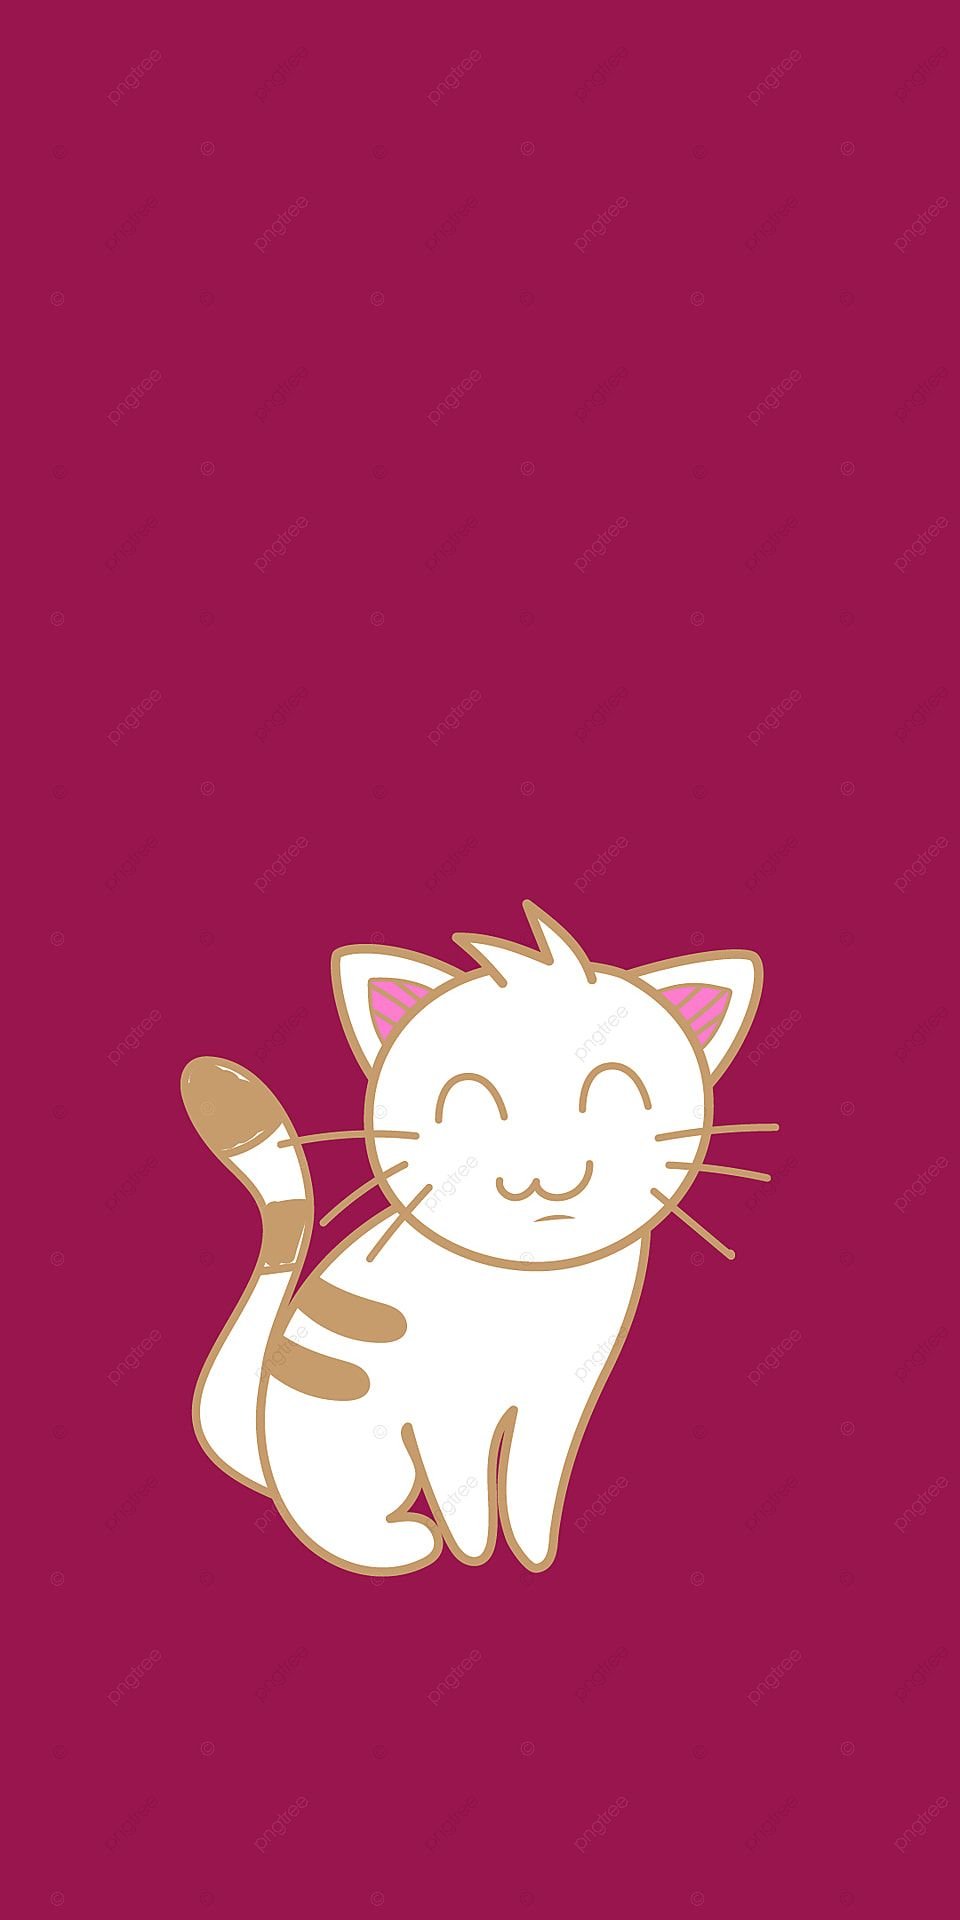 Sleepy Cat Wallpaper - iPhone, Android & Desktop Backgrounds